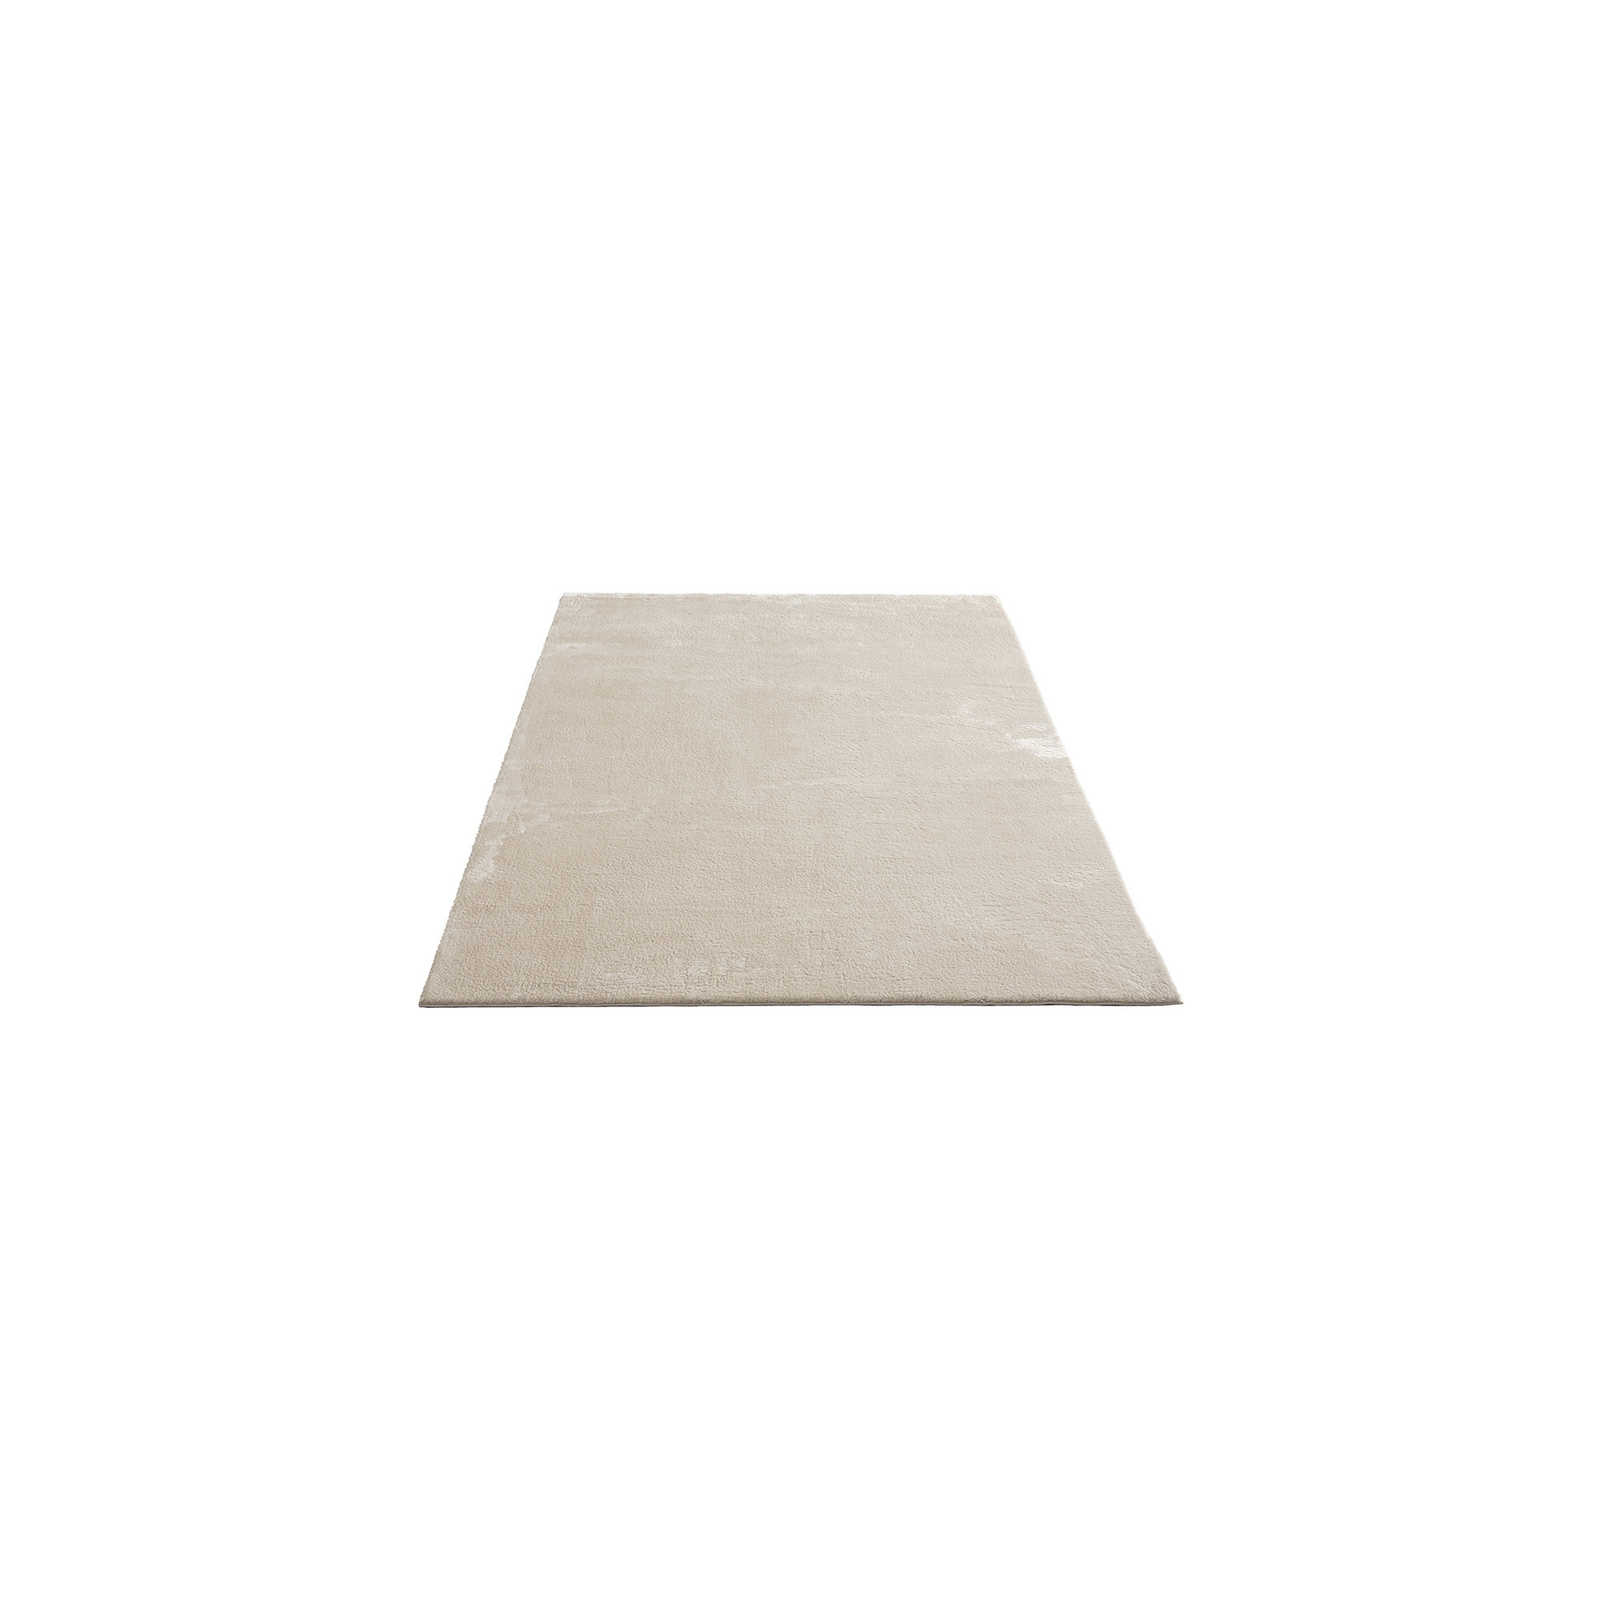 Soft high pile carpet in beige - 170 x 120 cm
